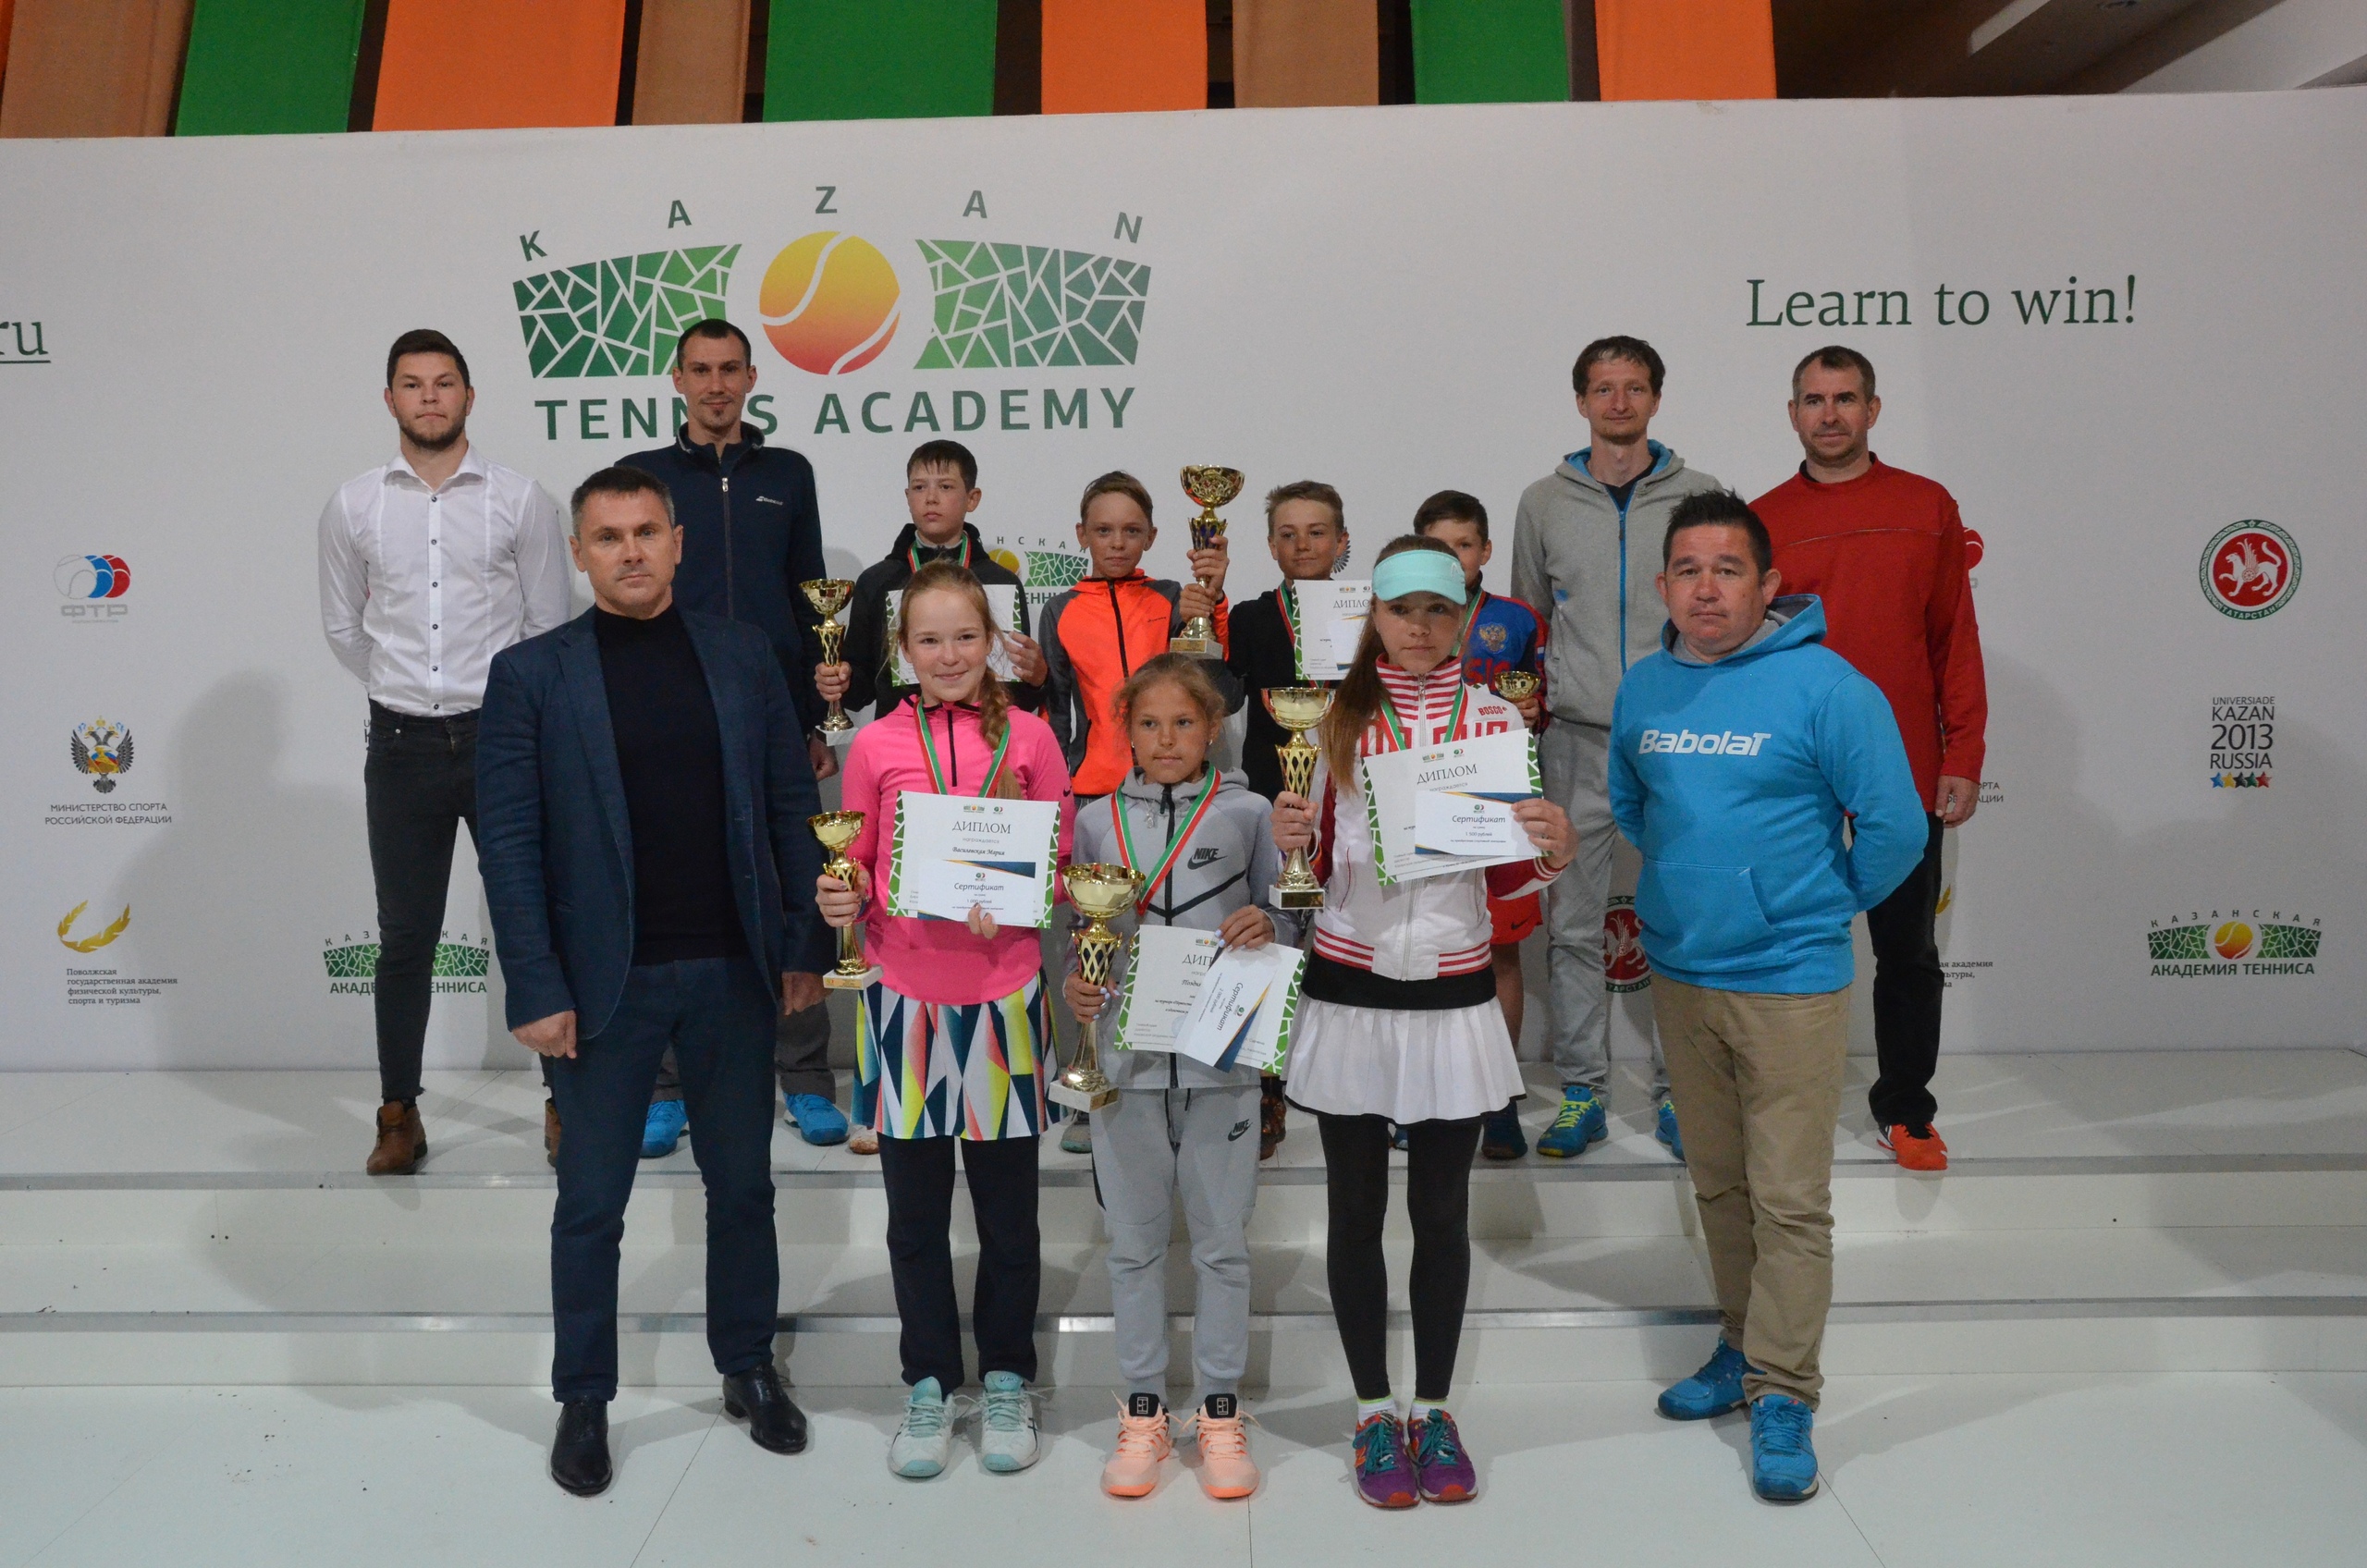 В Казанской Академии Тенниса состоялось торжественное закрытие ПФО - 2018!